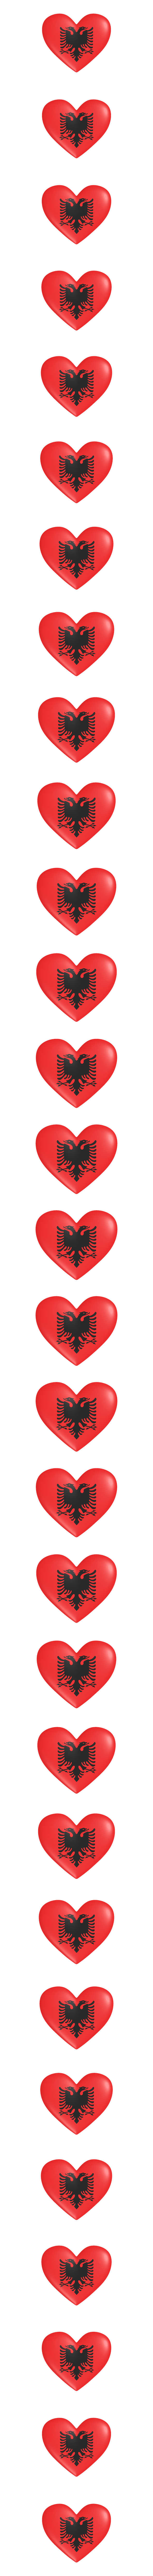 Albania heart